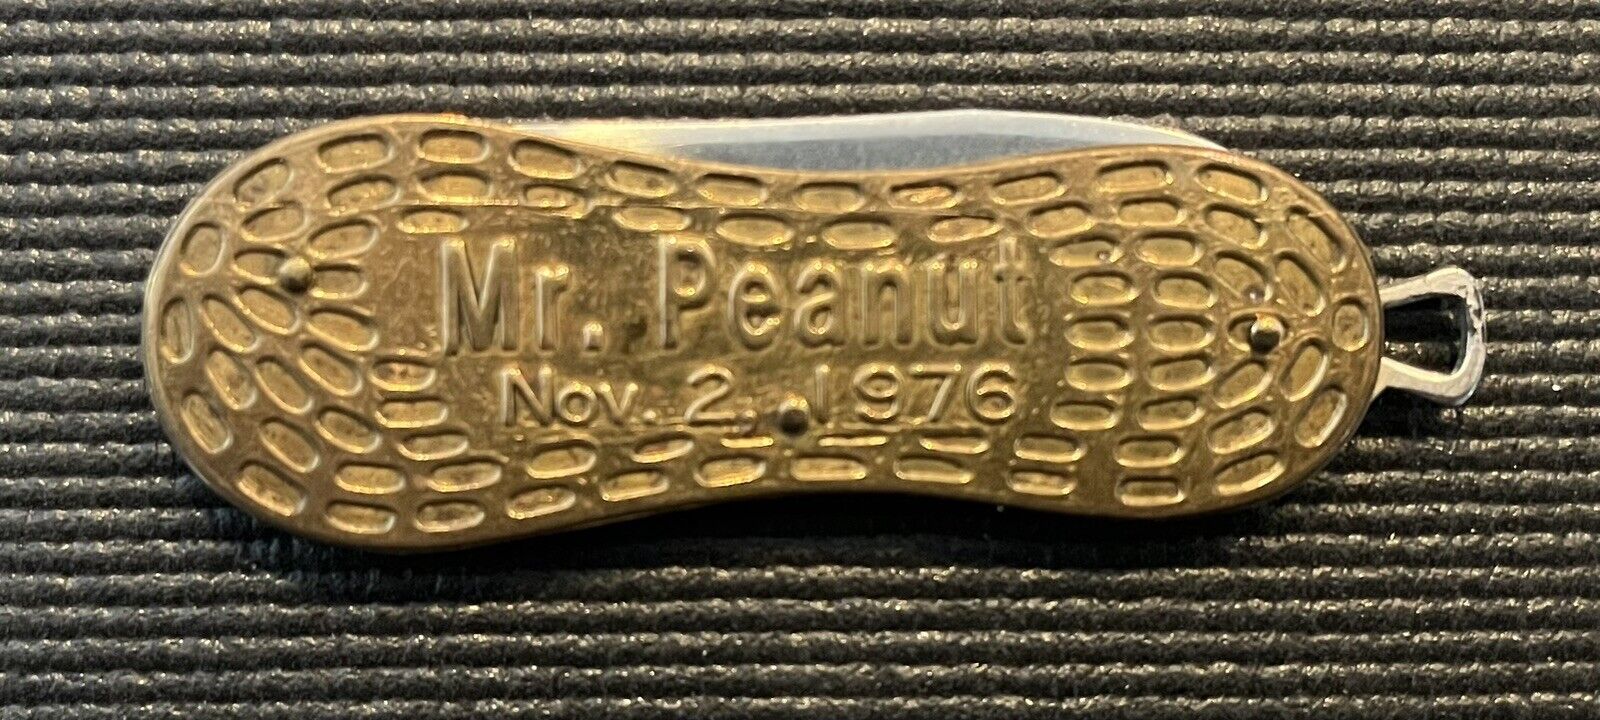 Vintage Carter Mr Peanut 1976 Presidential Campaign Pocket Knife. Brass